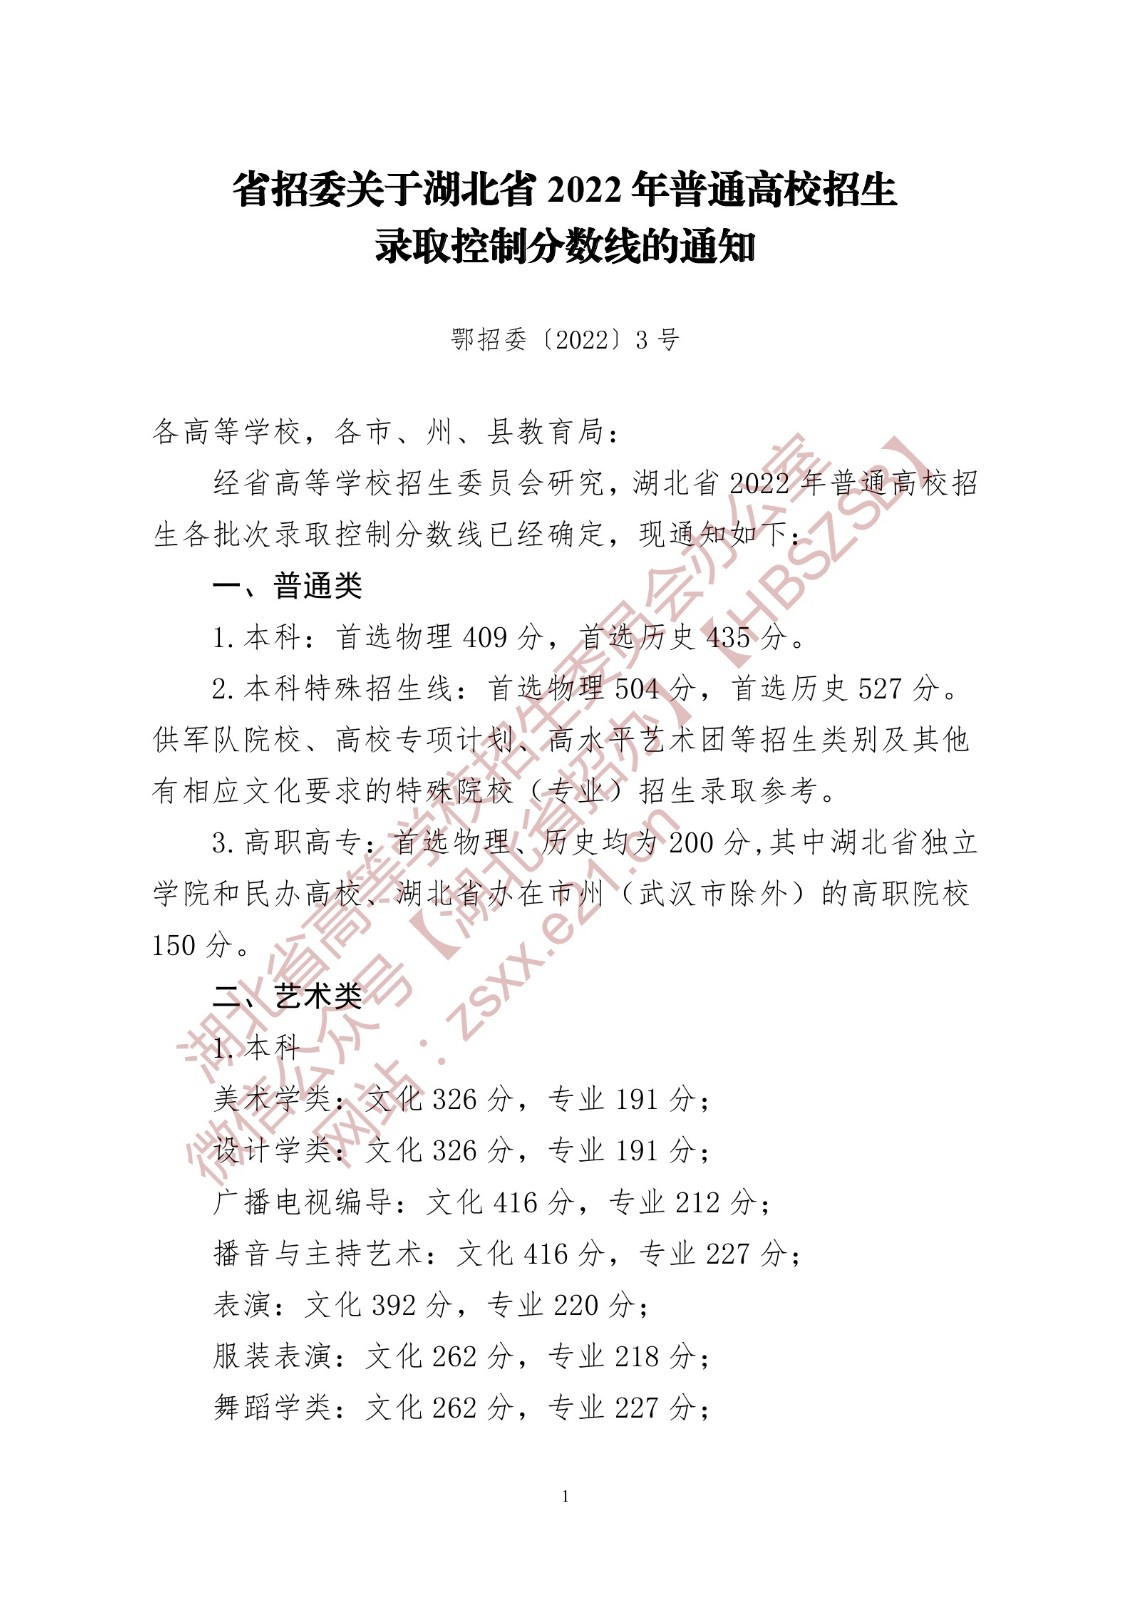 湖北省招委关于2022年湖北省普通高校招生音乐学类、舞蹈学类录取控制分数线的通知